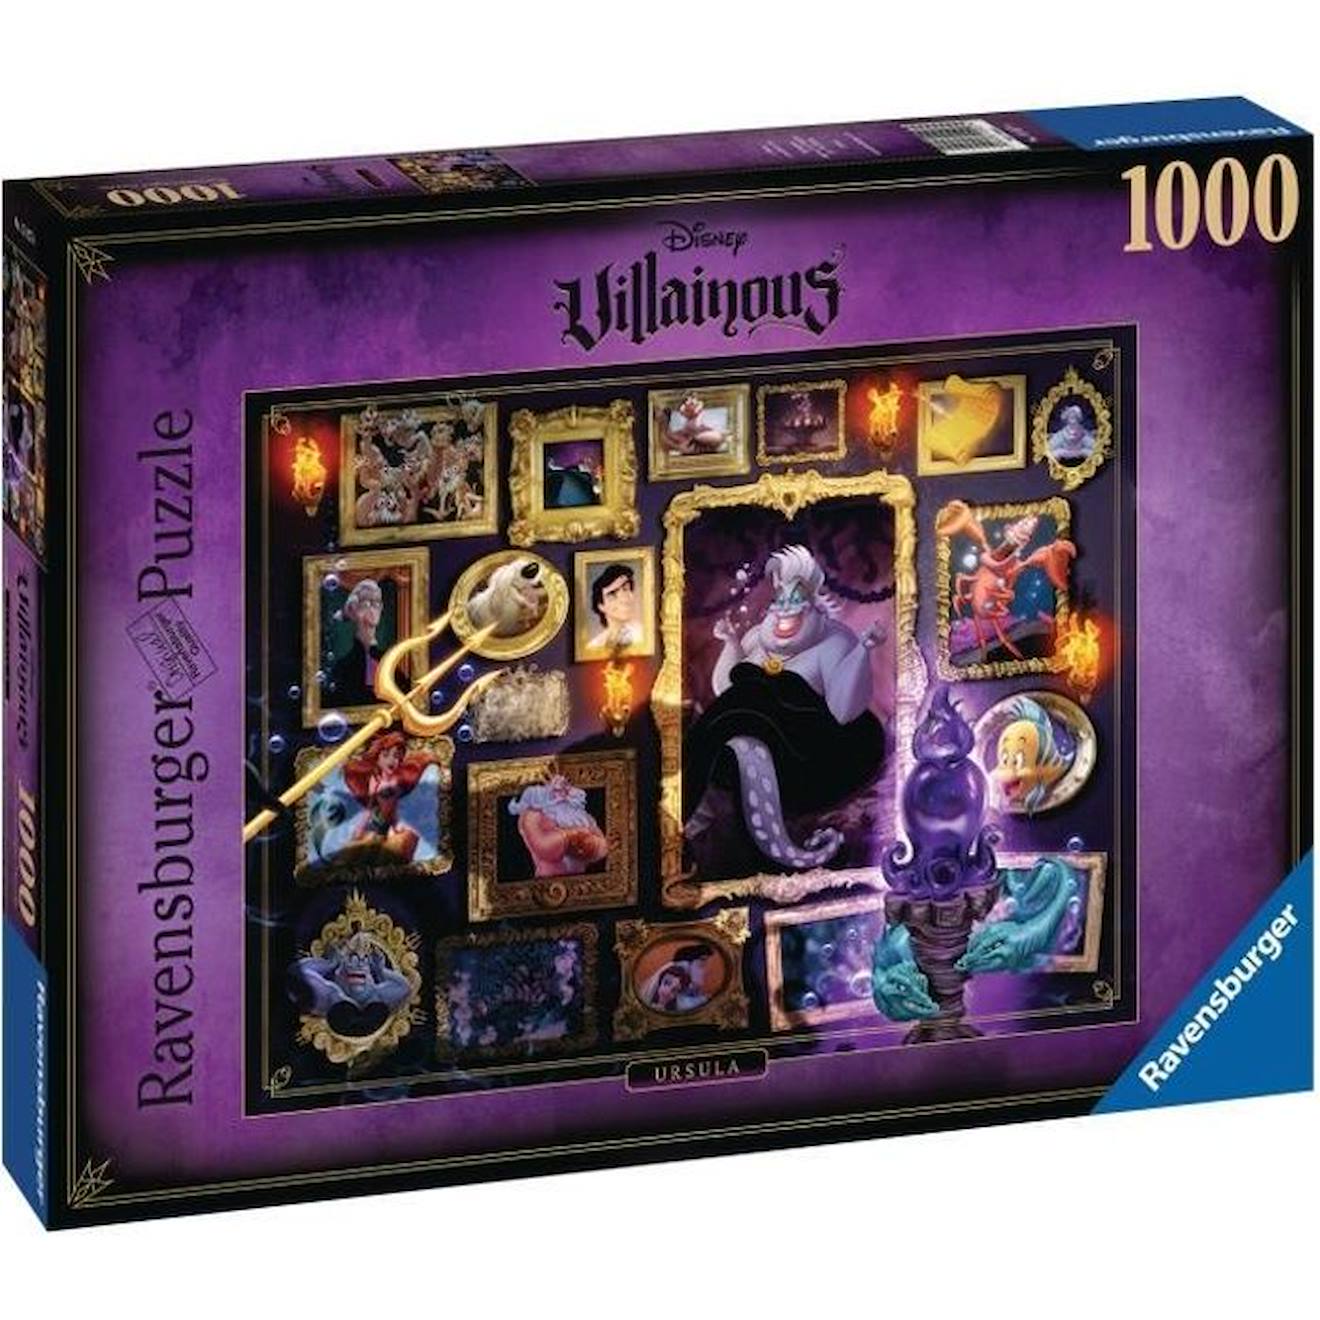 Puzzle 1000 Pièces Ursula - Ravensburger - Collection Disney Villainous - Fantastique Violet Mixte V